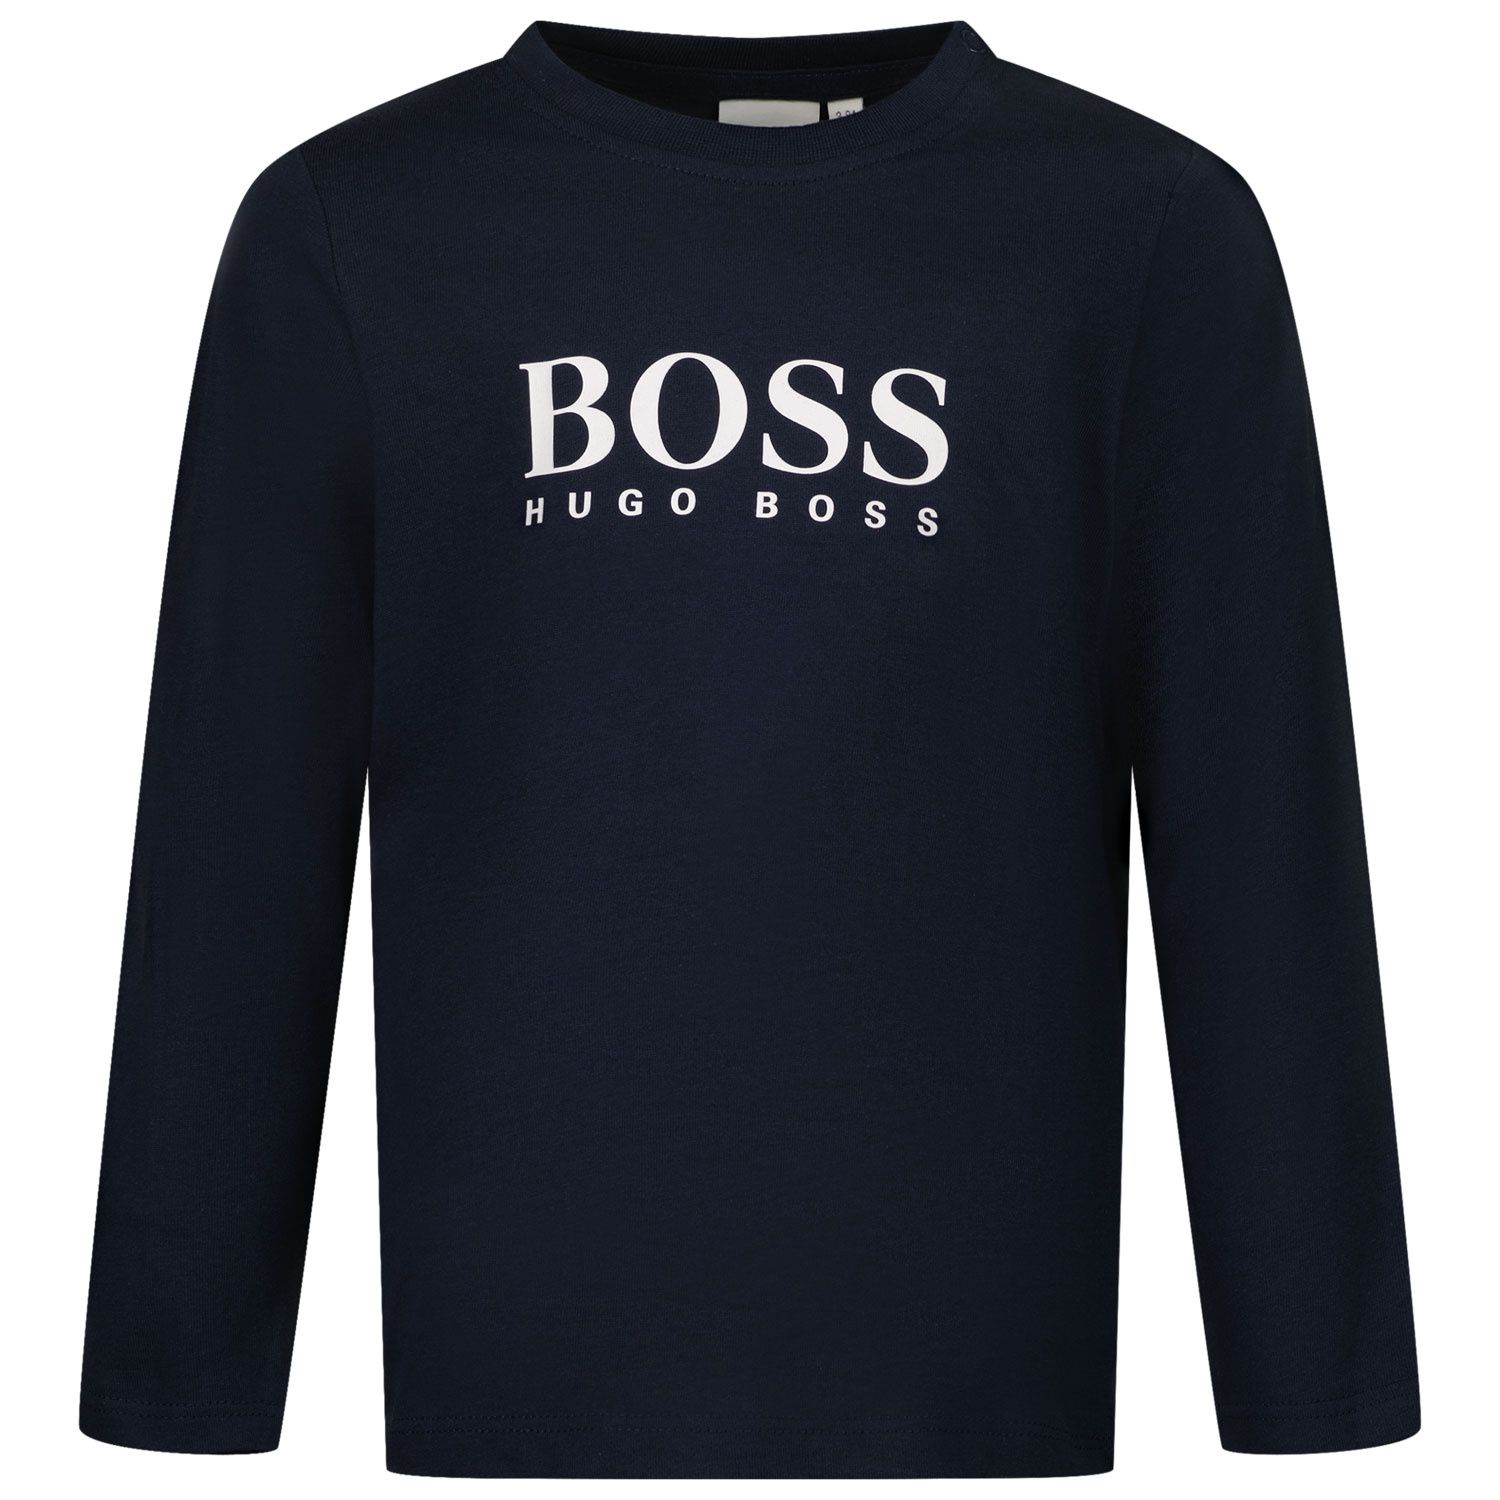 Afbeelding van Boss J05P10 baby t-shirt navy